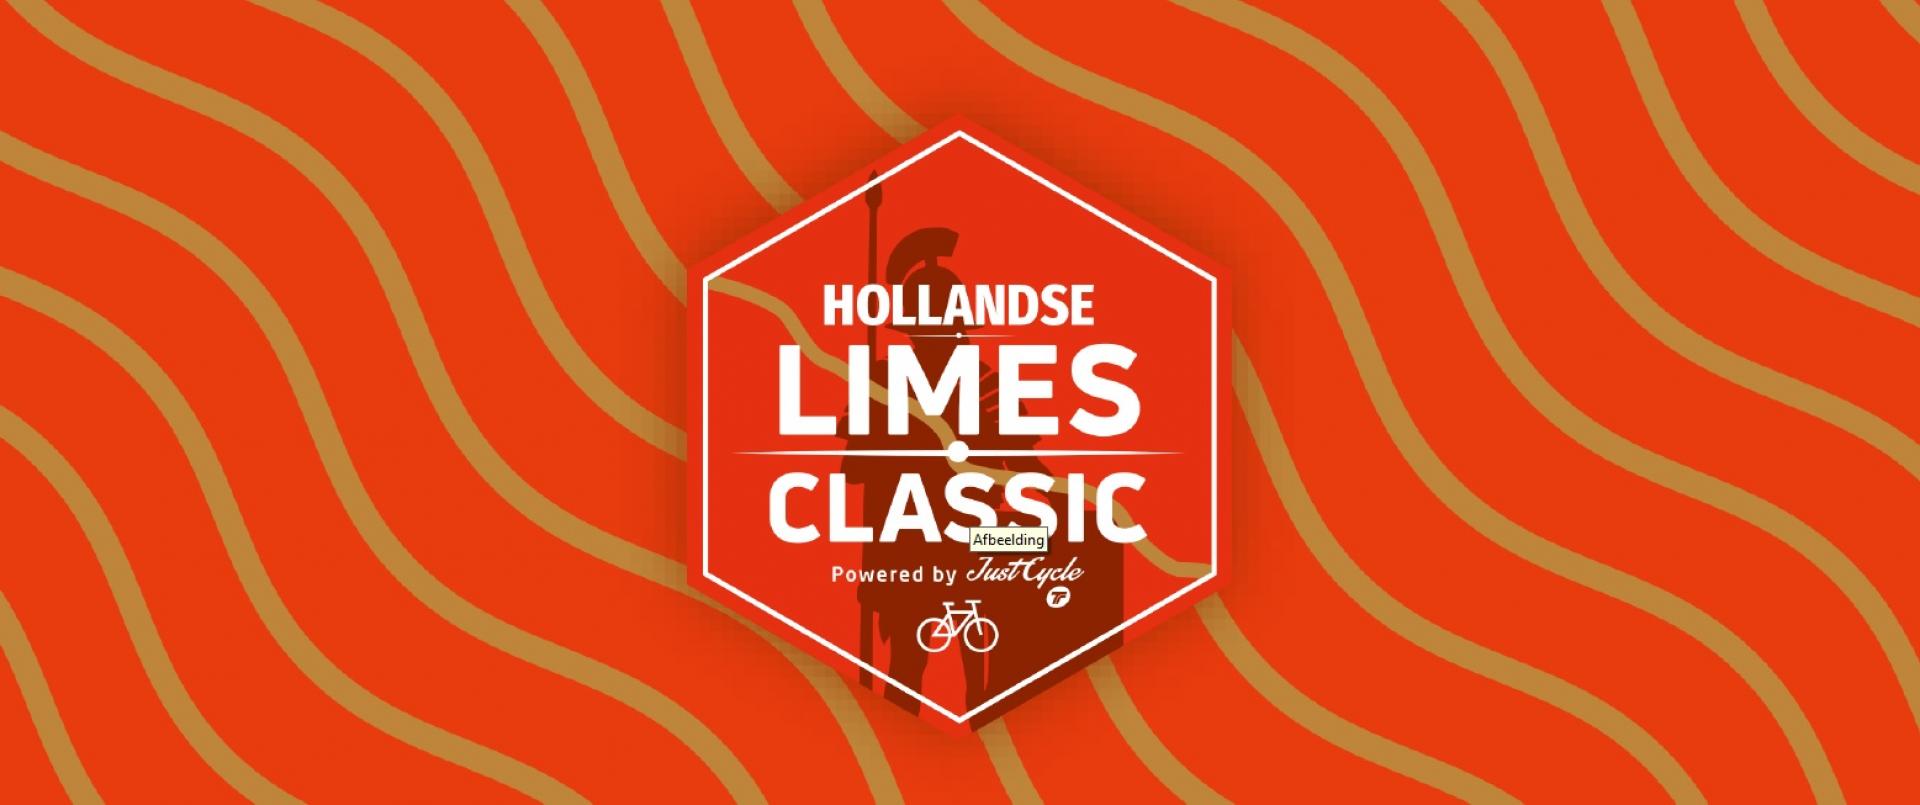 Lancering website Hollandse Limes Classic